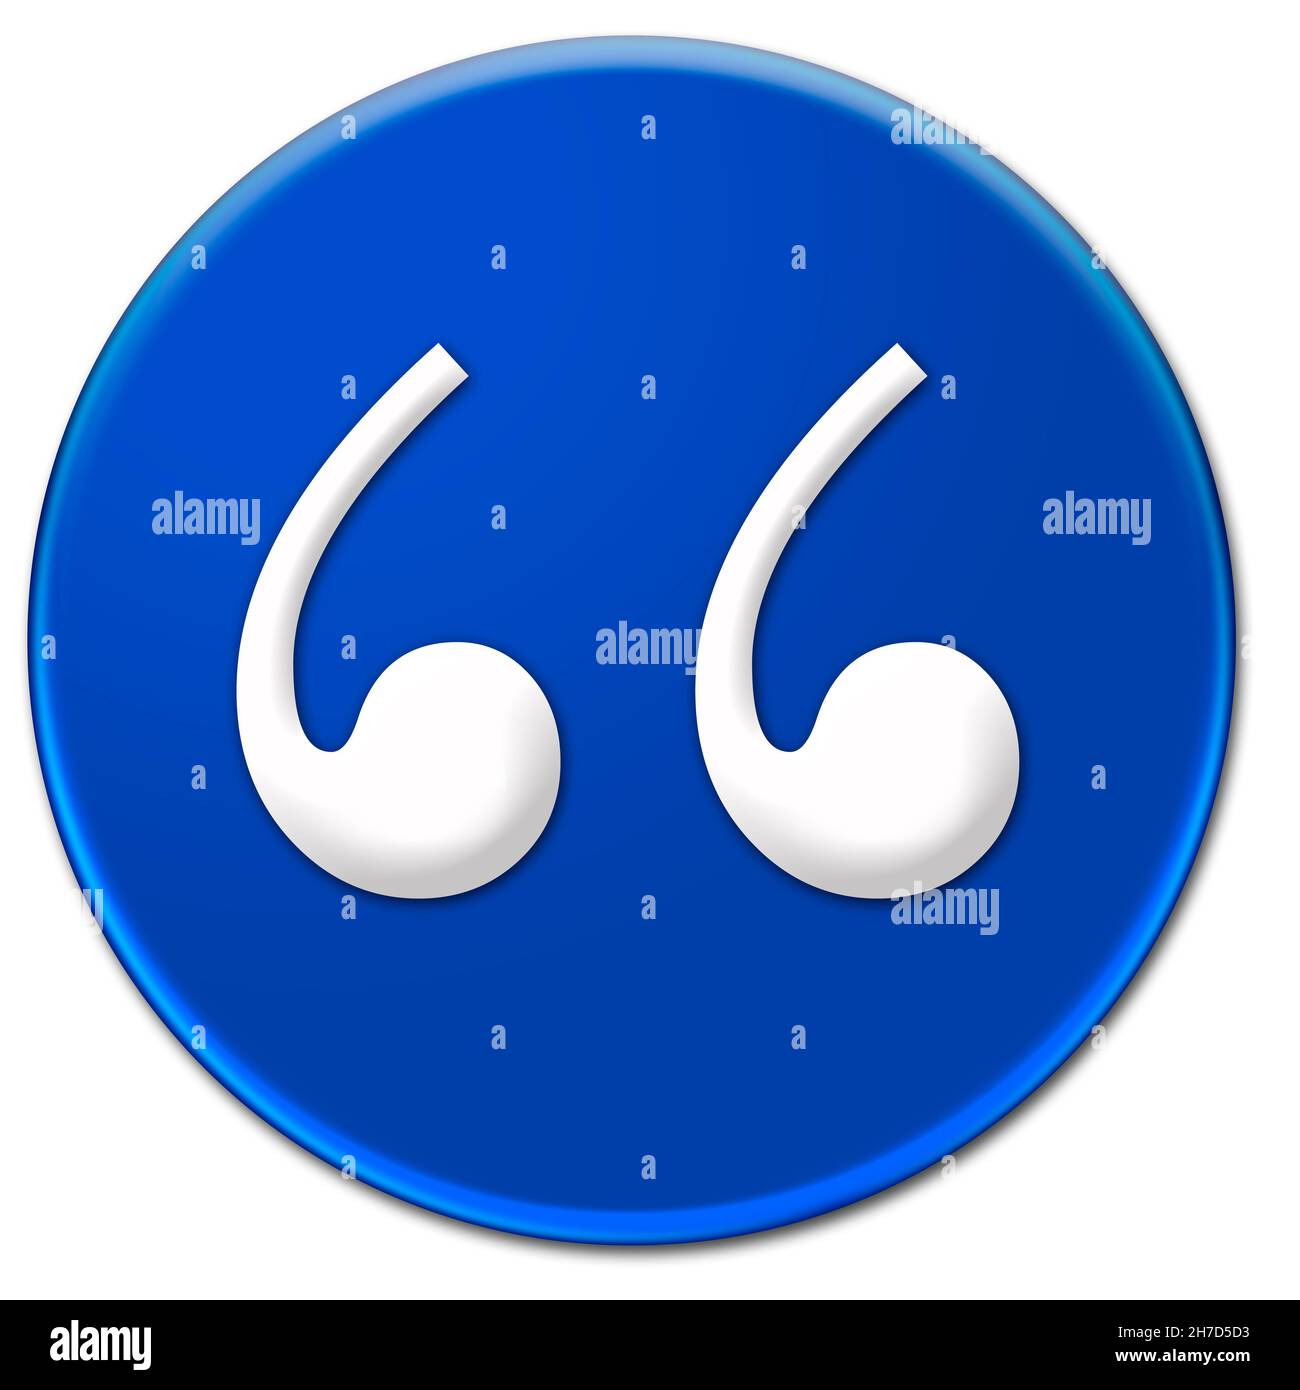 Ein weißes Anführungszeichen Bodoni MT-Schrifttyp auf einem blauen, glasigen Knopf, der auf weißem Hintergrund isoliert ist Stockfoto